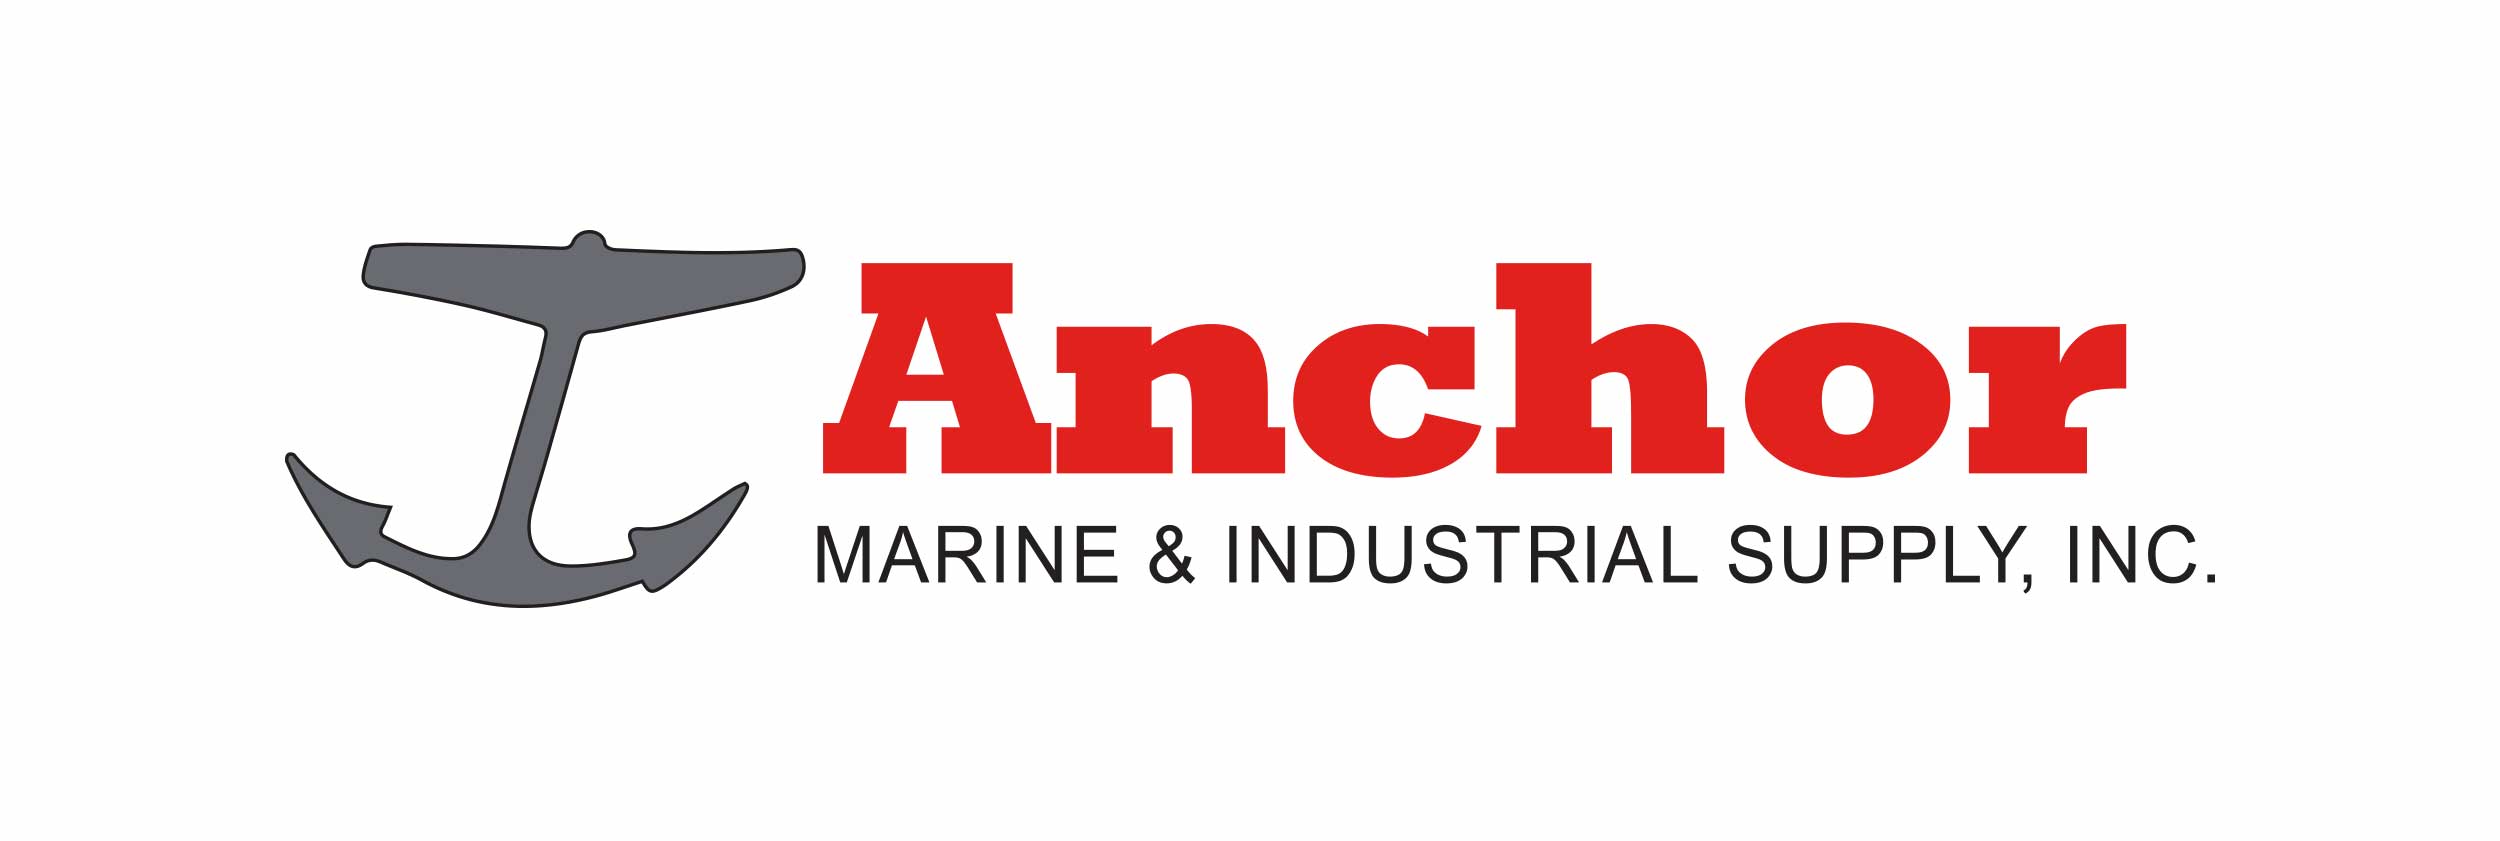 Anchor Marine Logo Design